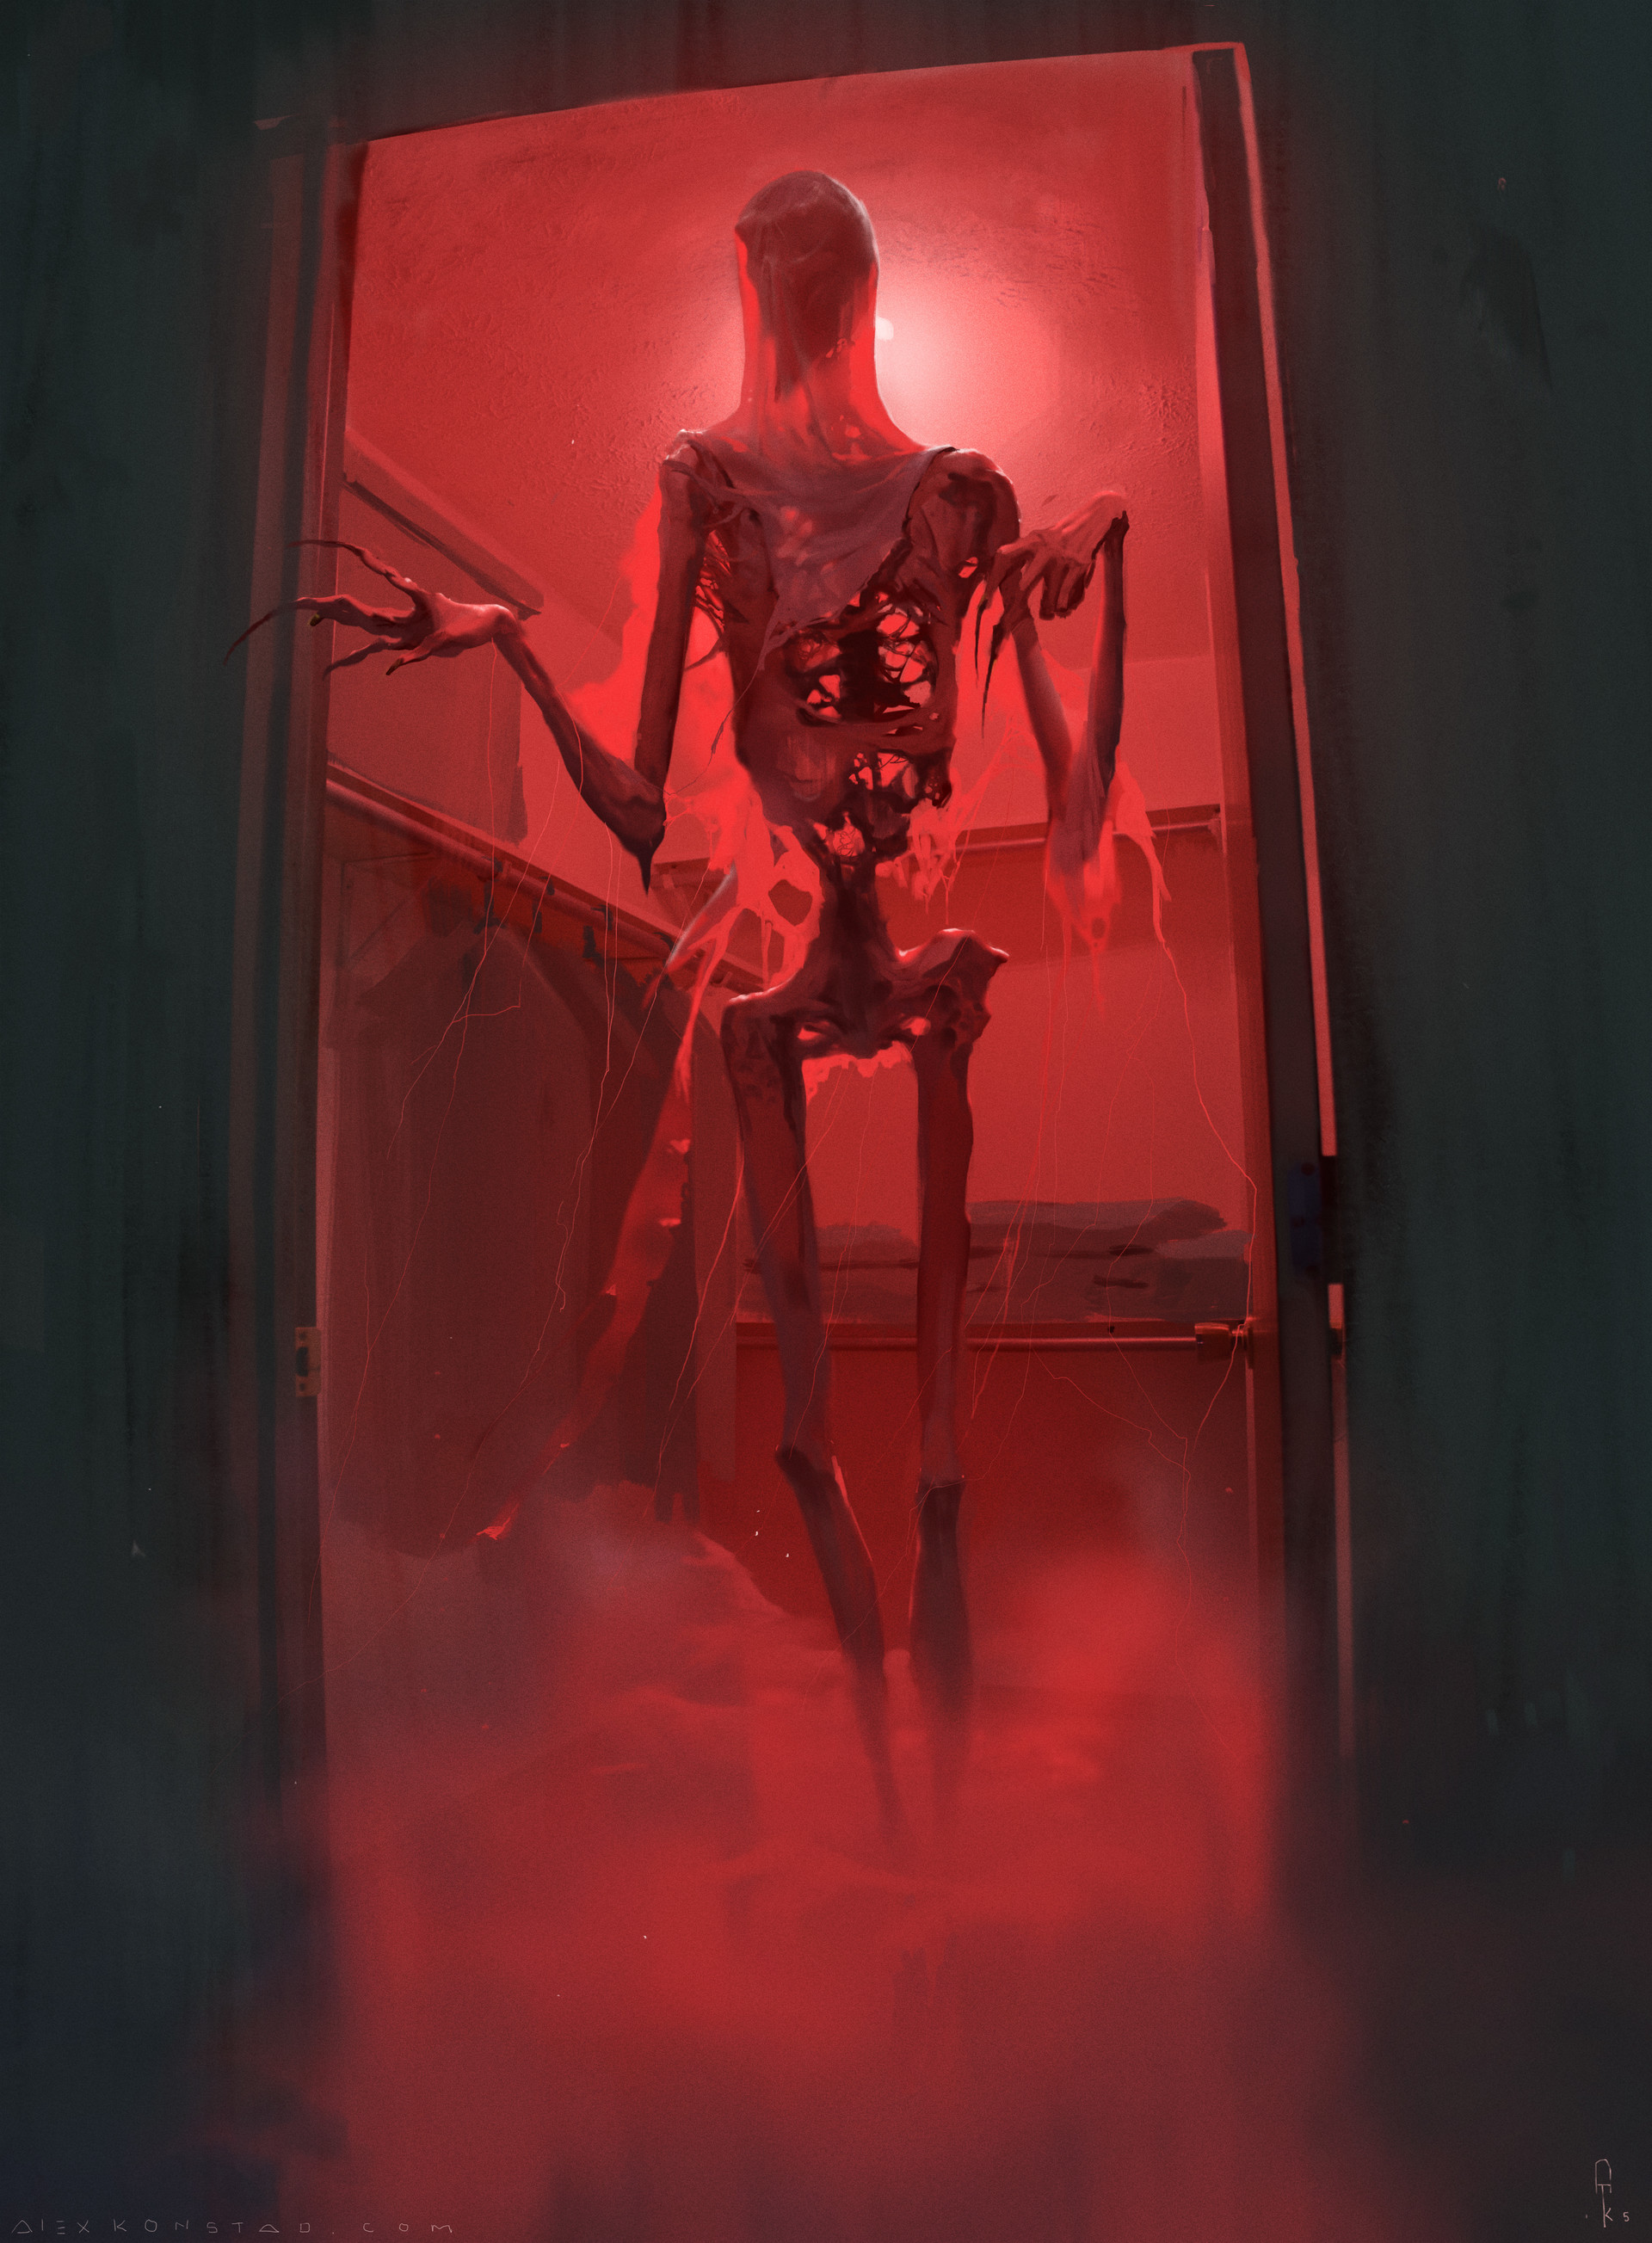 General 1920x2607 Alex Konstad nightmare drawing bathroom skeleton red door doorways door knob low light watermarked digital art bones